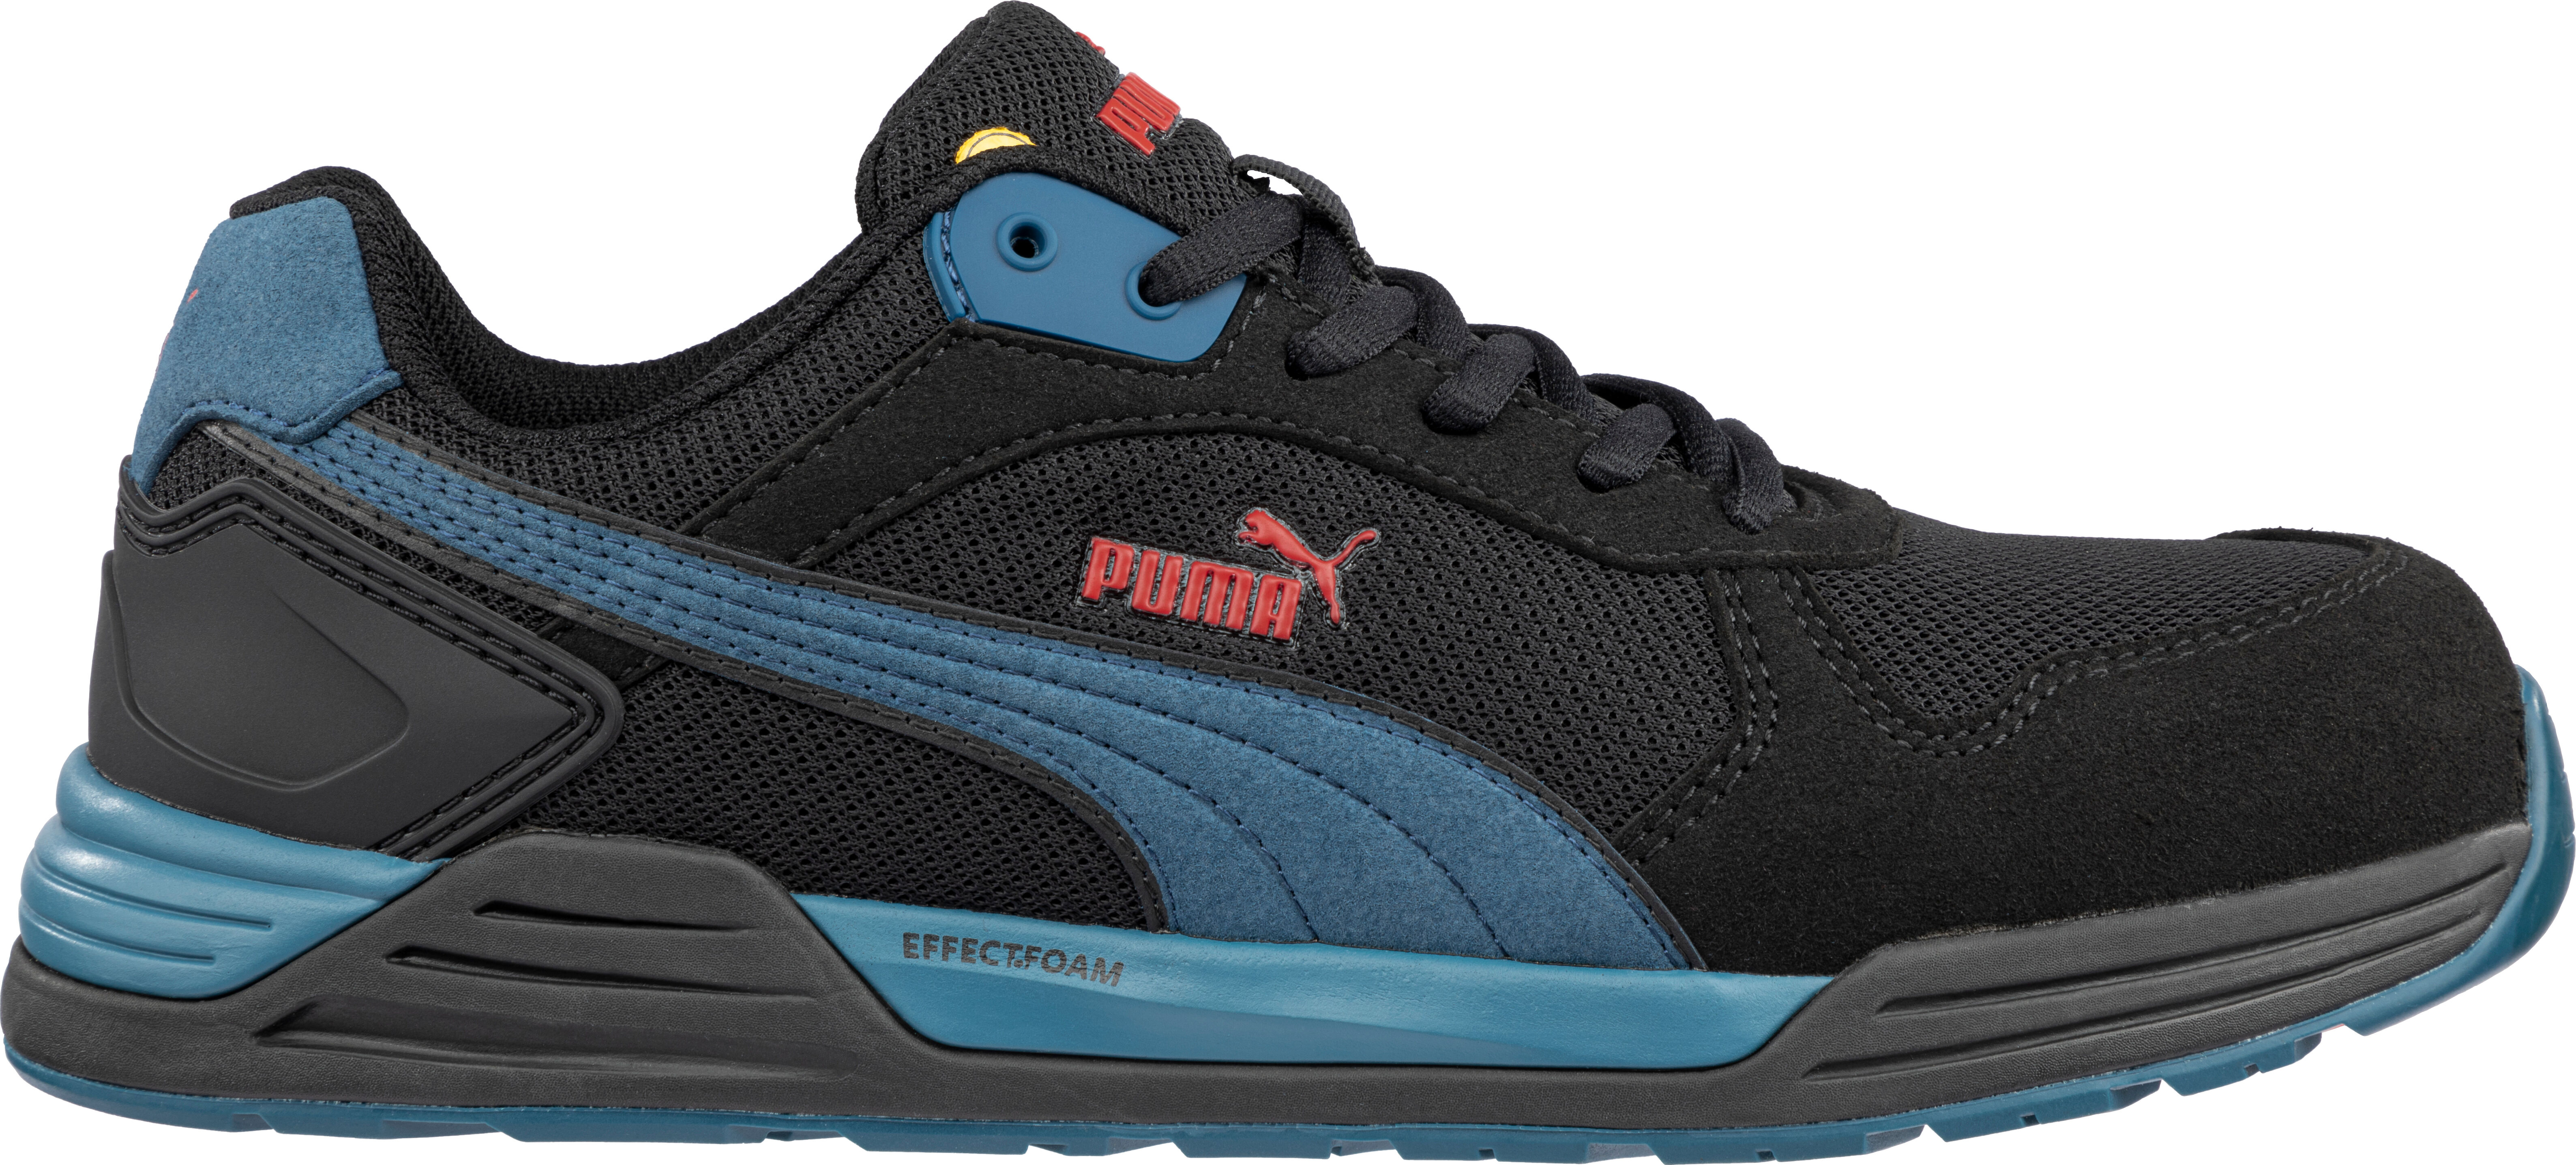 Chaussures de sécurité Puma Airtwist Blue Low